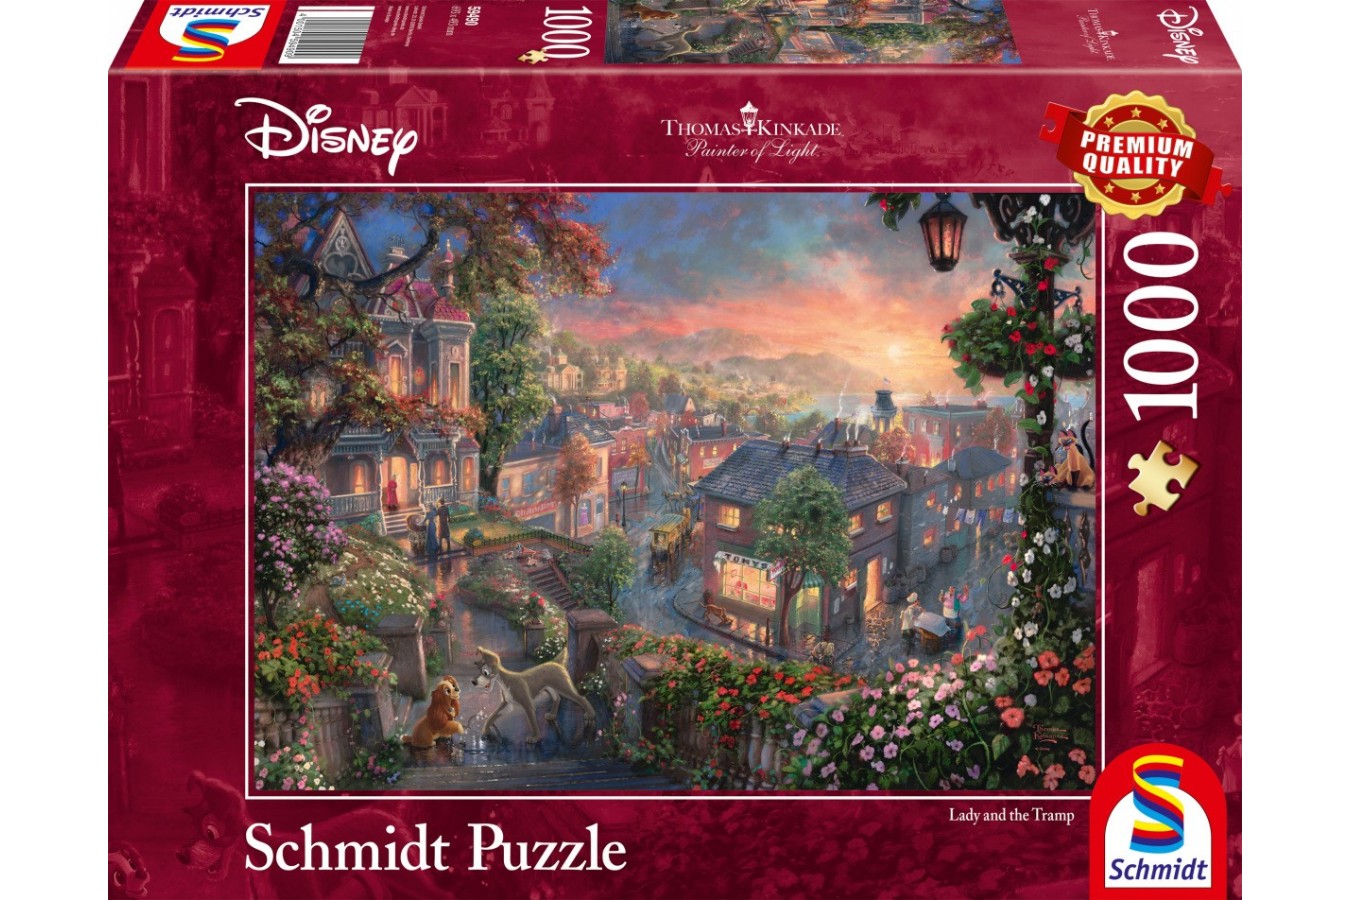 Puzzle Schmidt - Thomas Kinkade: Doamna Si Vagabondul, 1000 piese (59490)